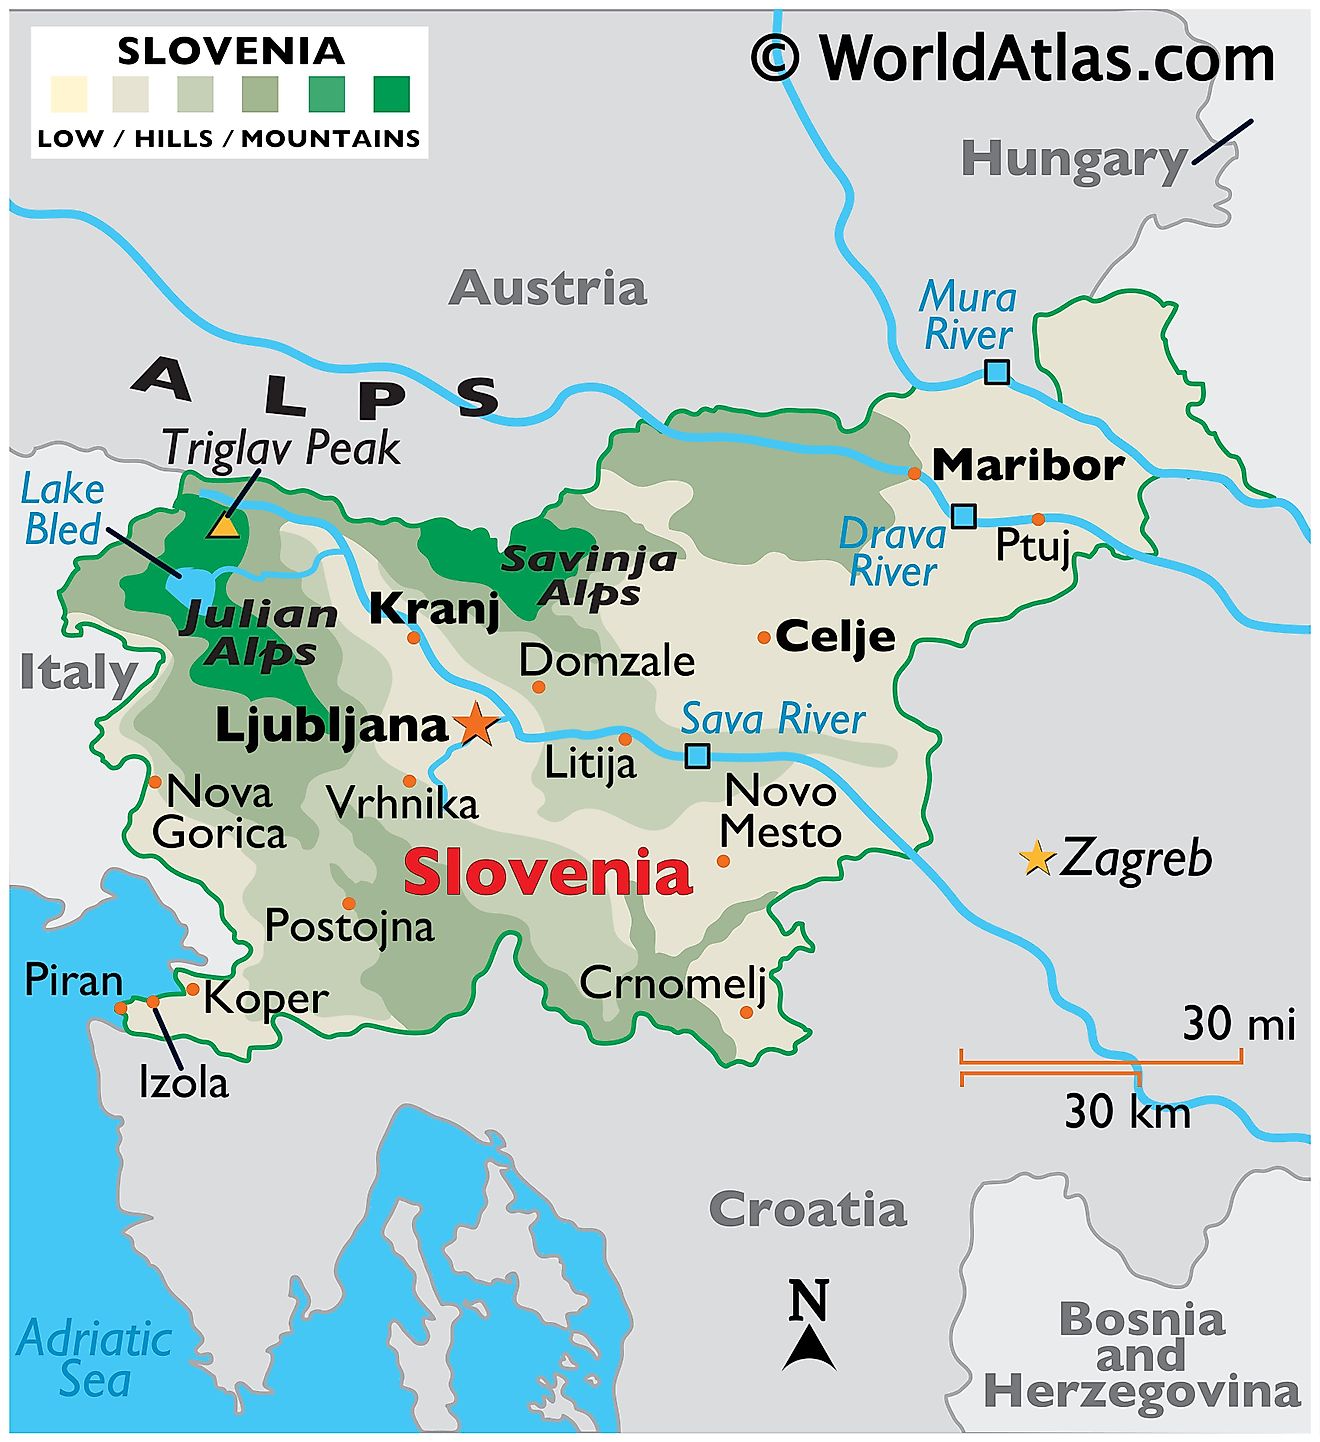 Mapa físico de Eslovenia que muestra el relieve, las fronteras internacionales, los principales ríos, cadenas montañosas, puntos extremos, ciudades importantes, etc.